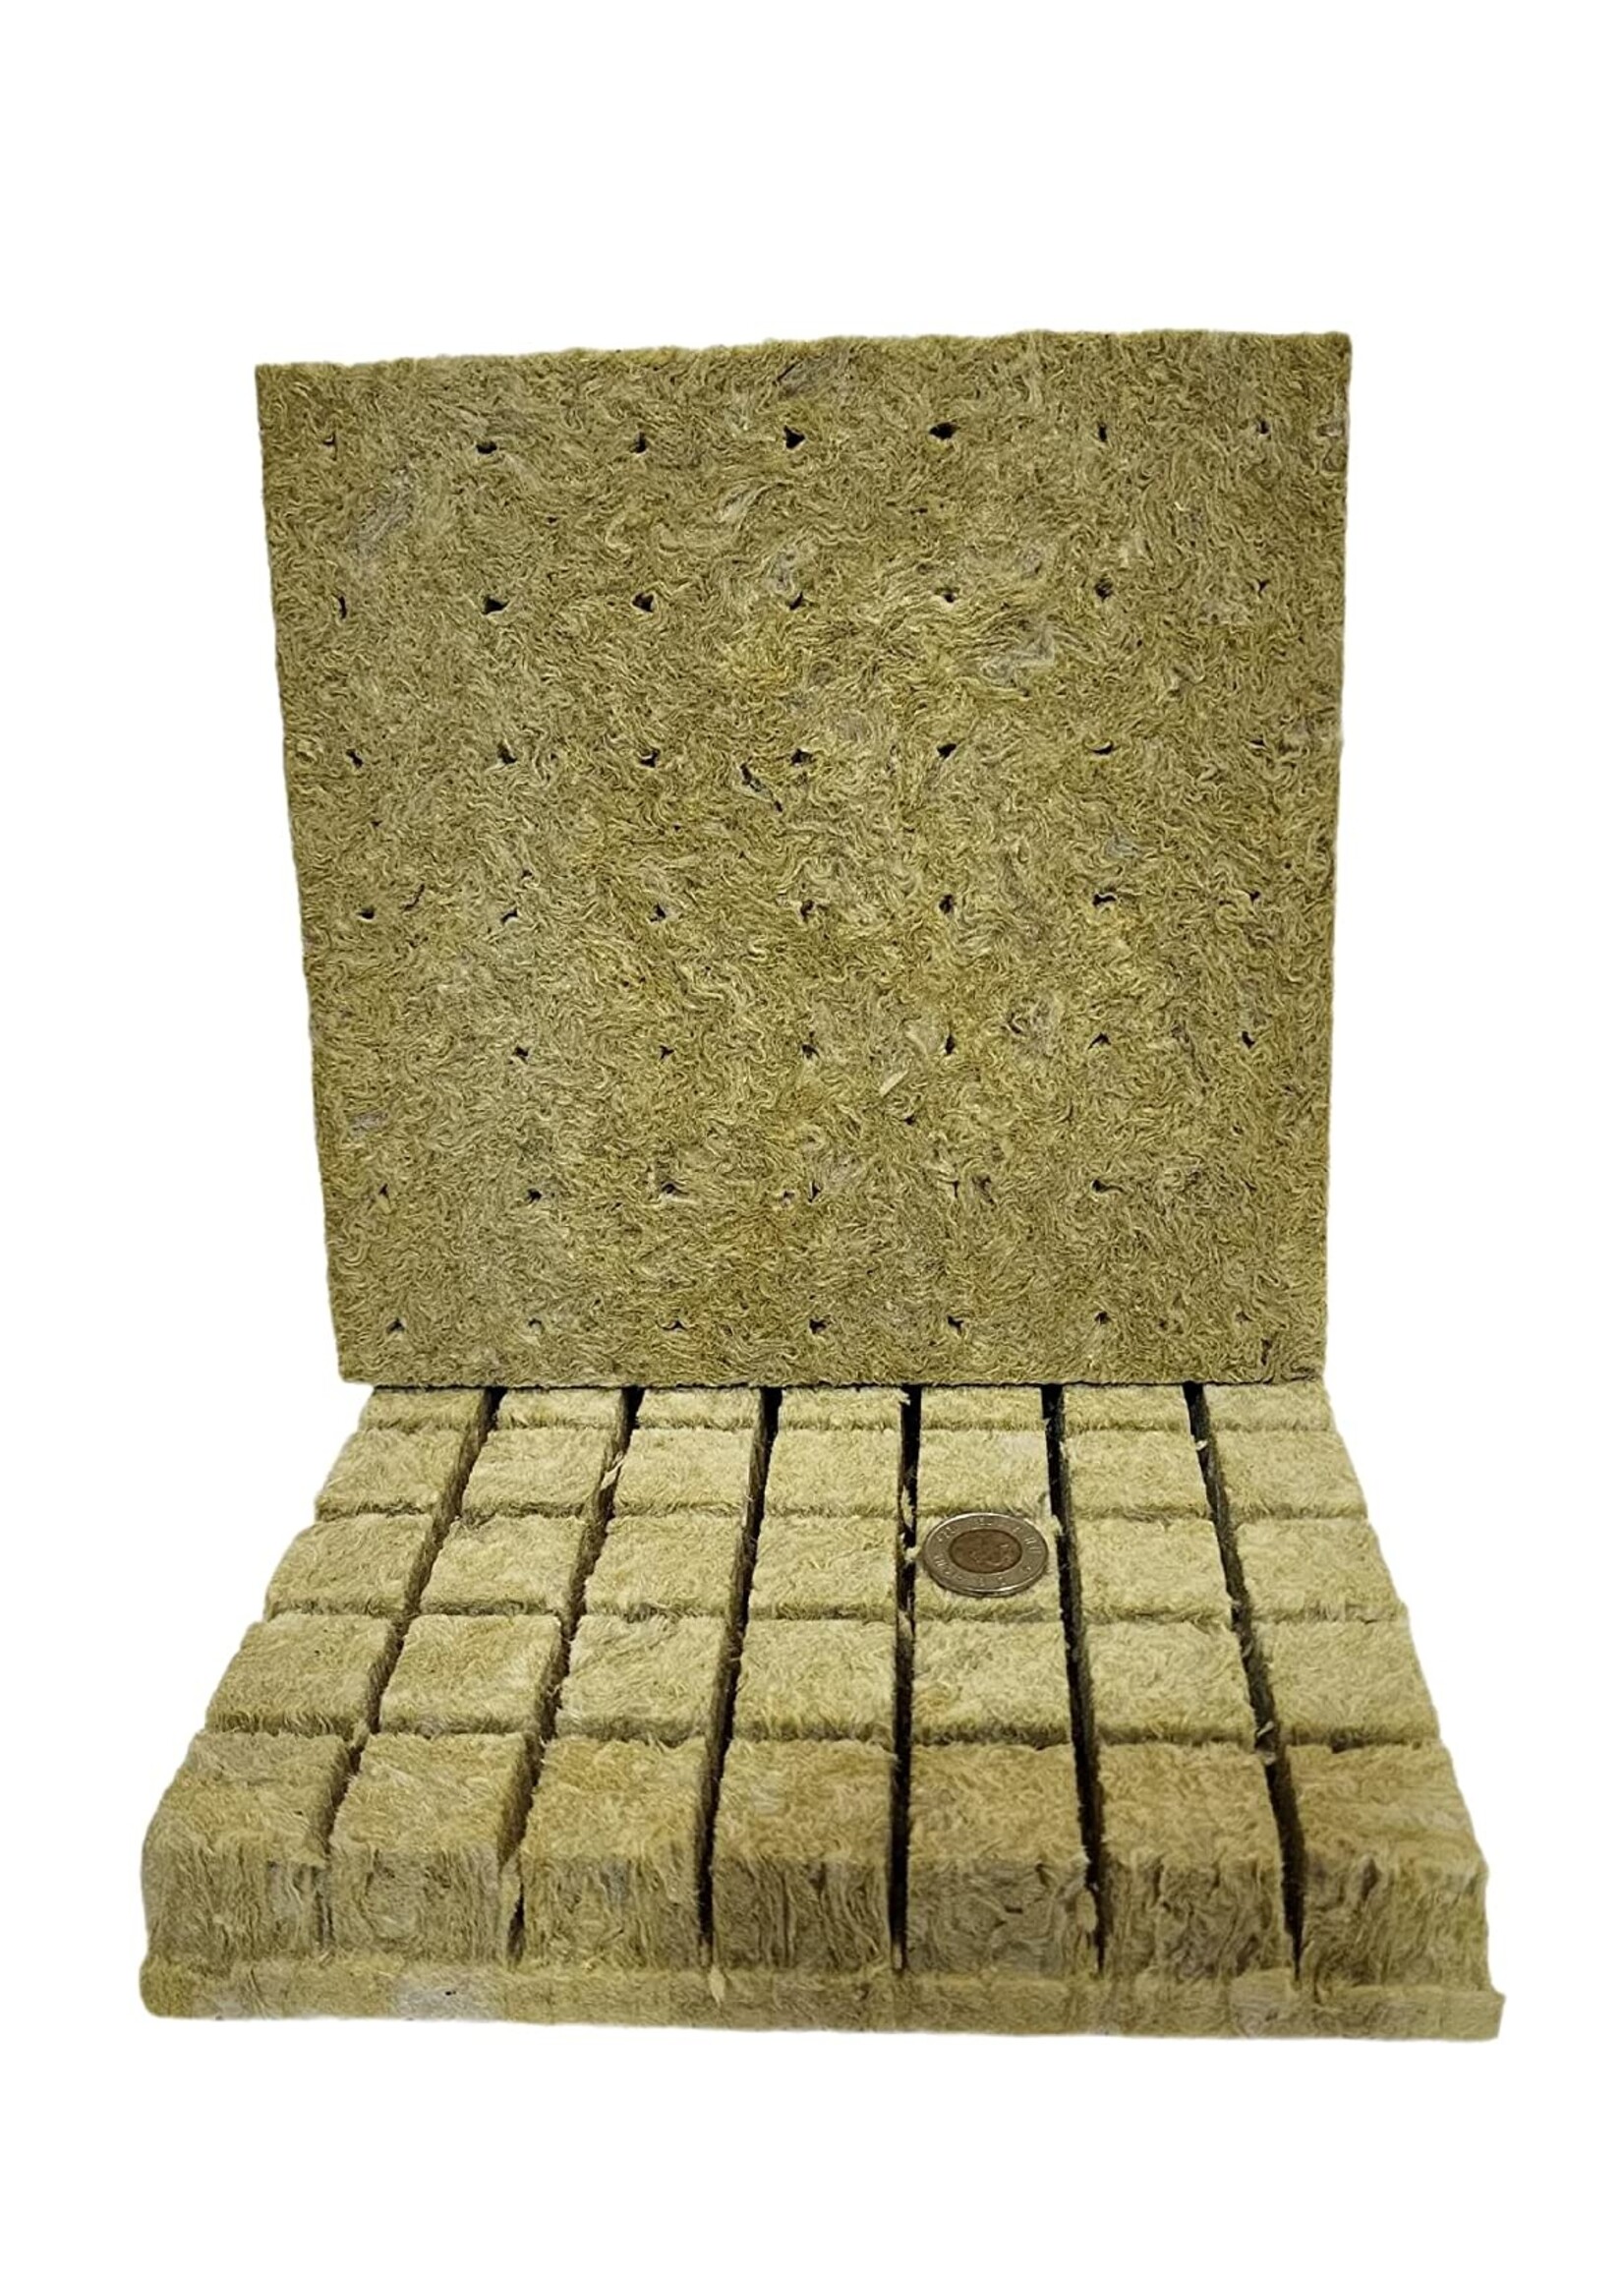 Grodan GRODAN Rockwool Grow Plugs 1.5" x 1.5" - 98 Pcs Hydroponic Mineral Rockwool Starter Cubes